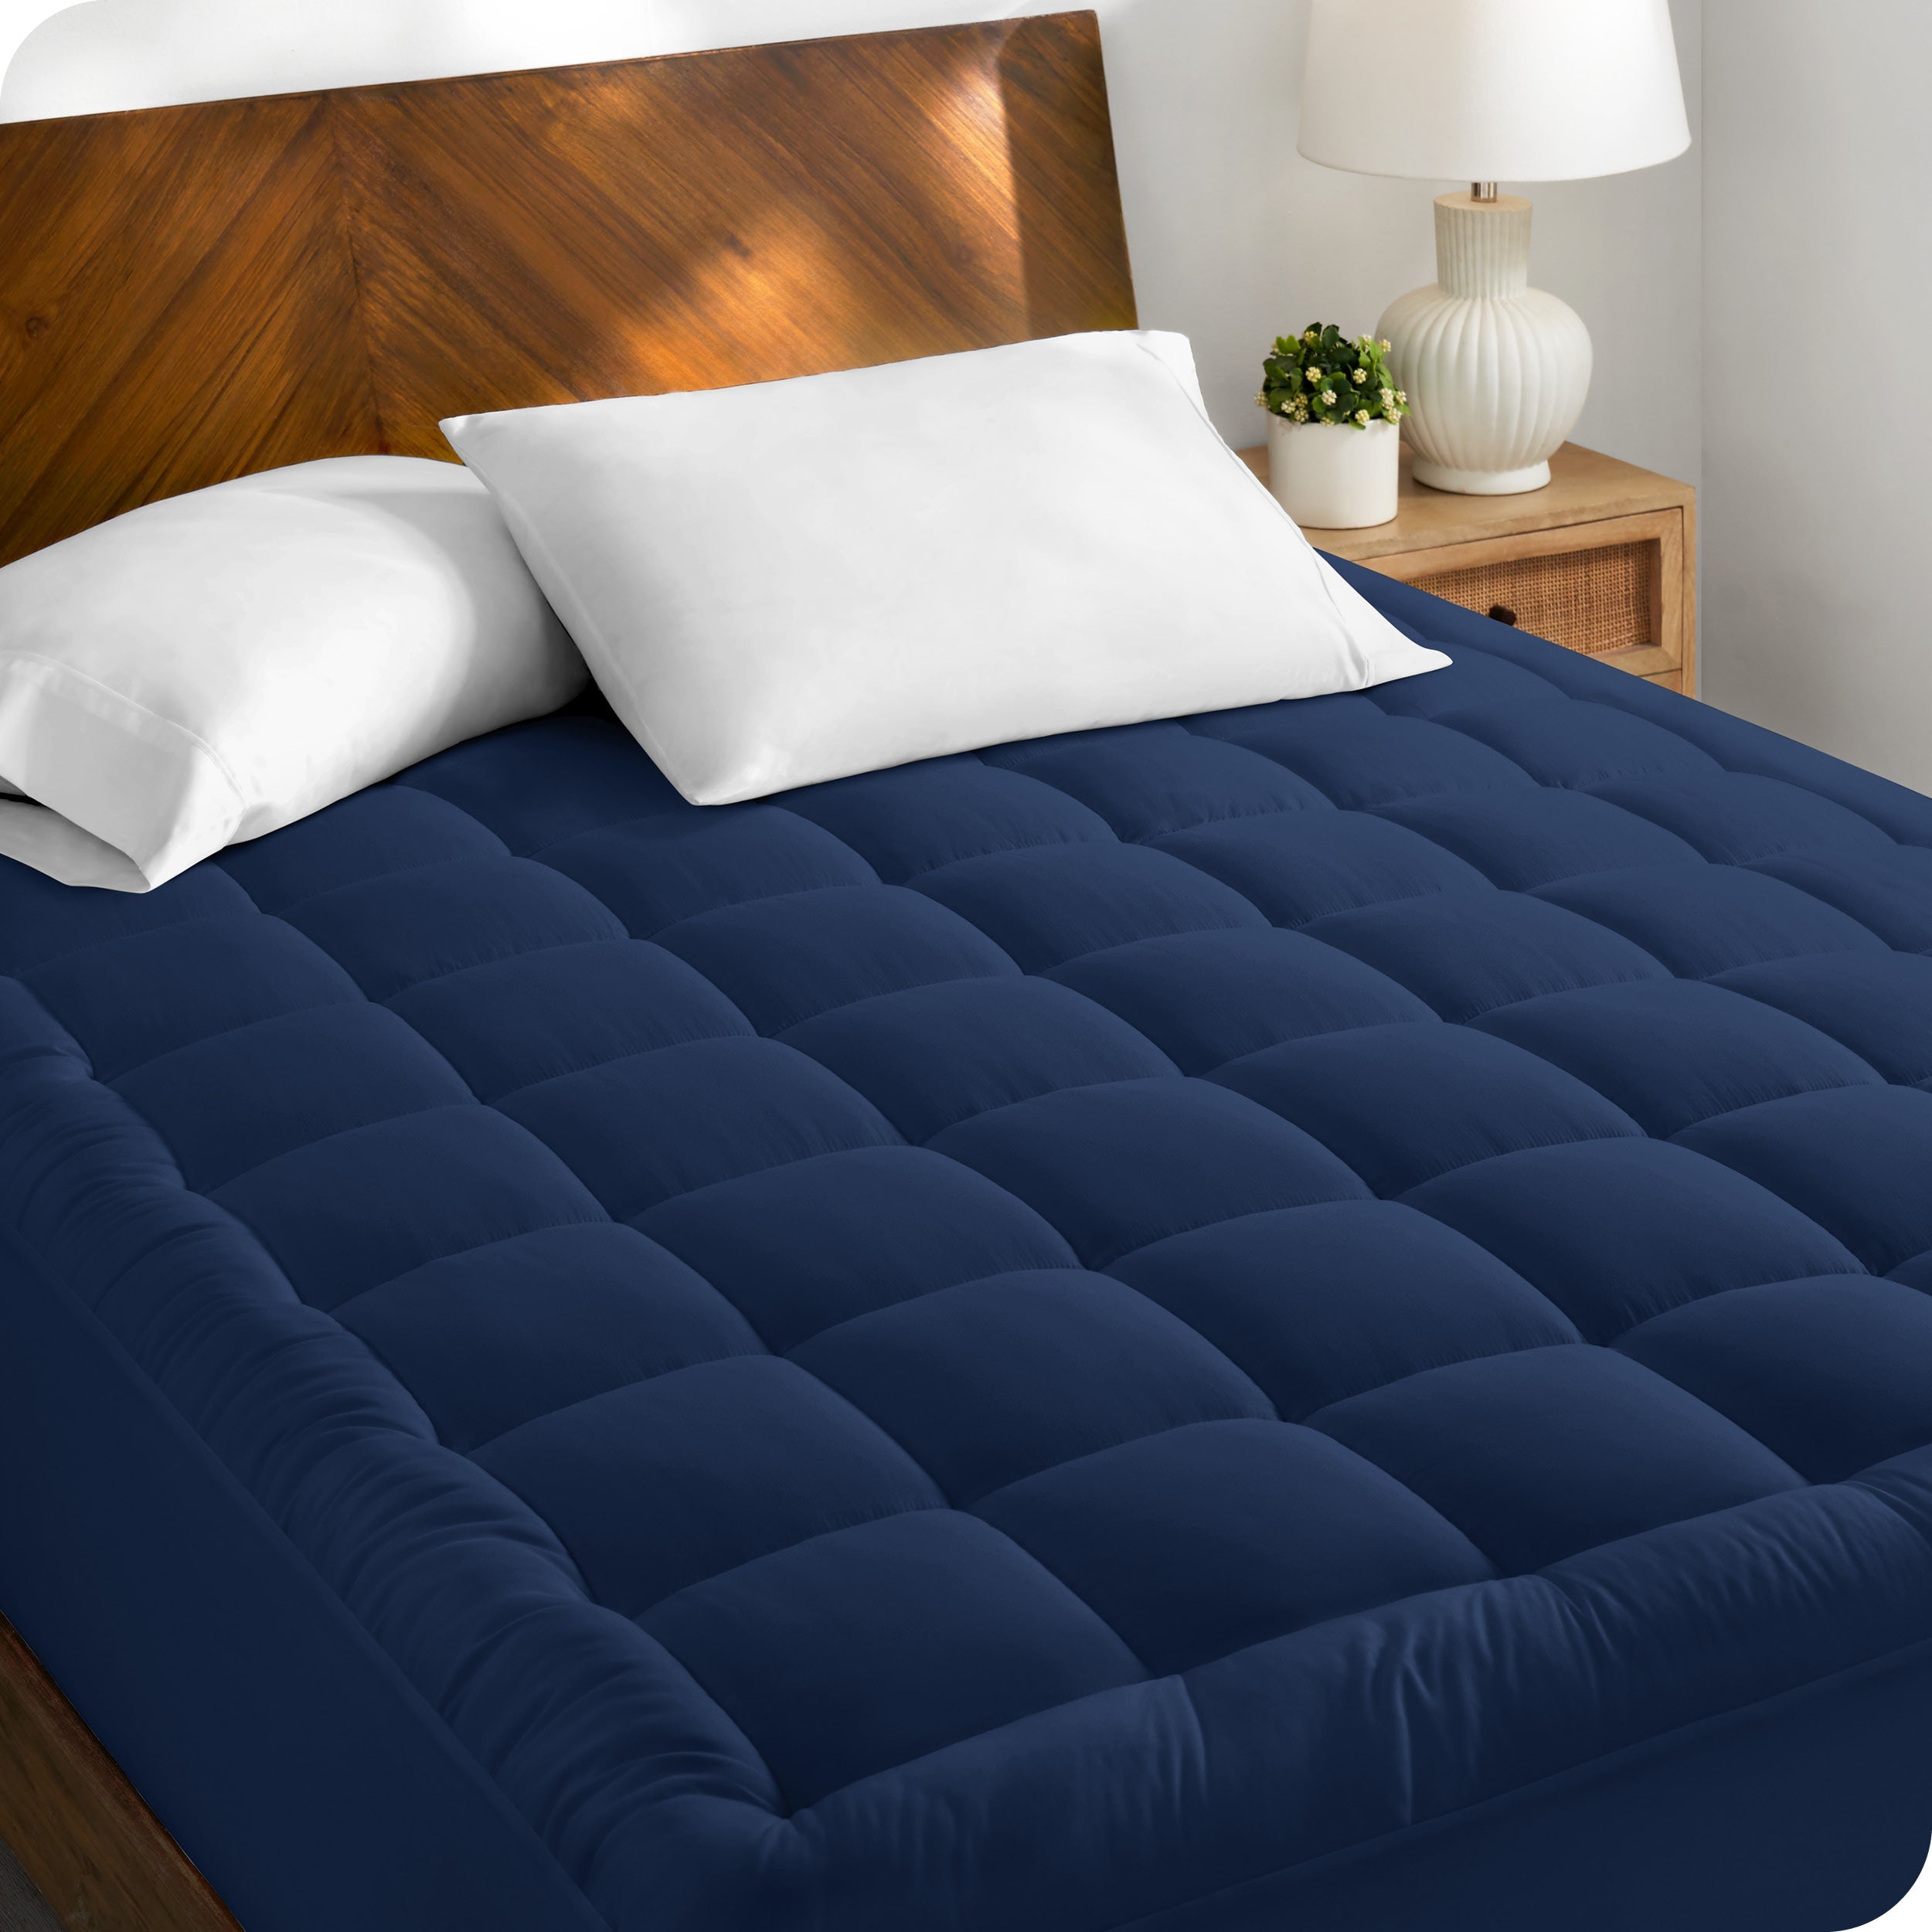 A cotton top mattress pad on a mattress in a modern bedroom.